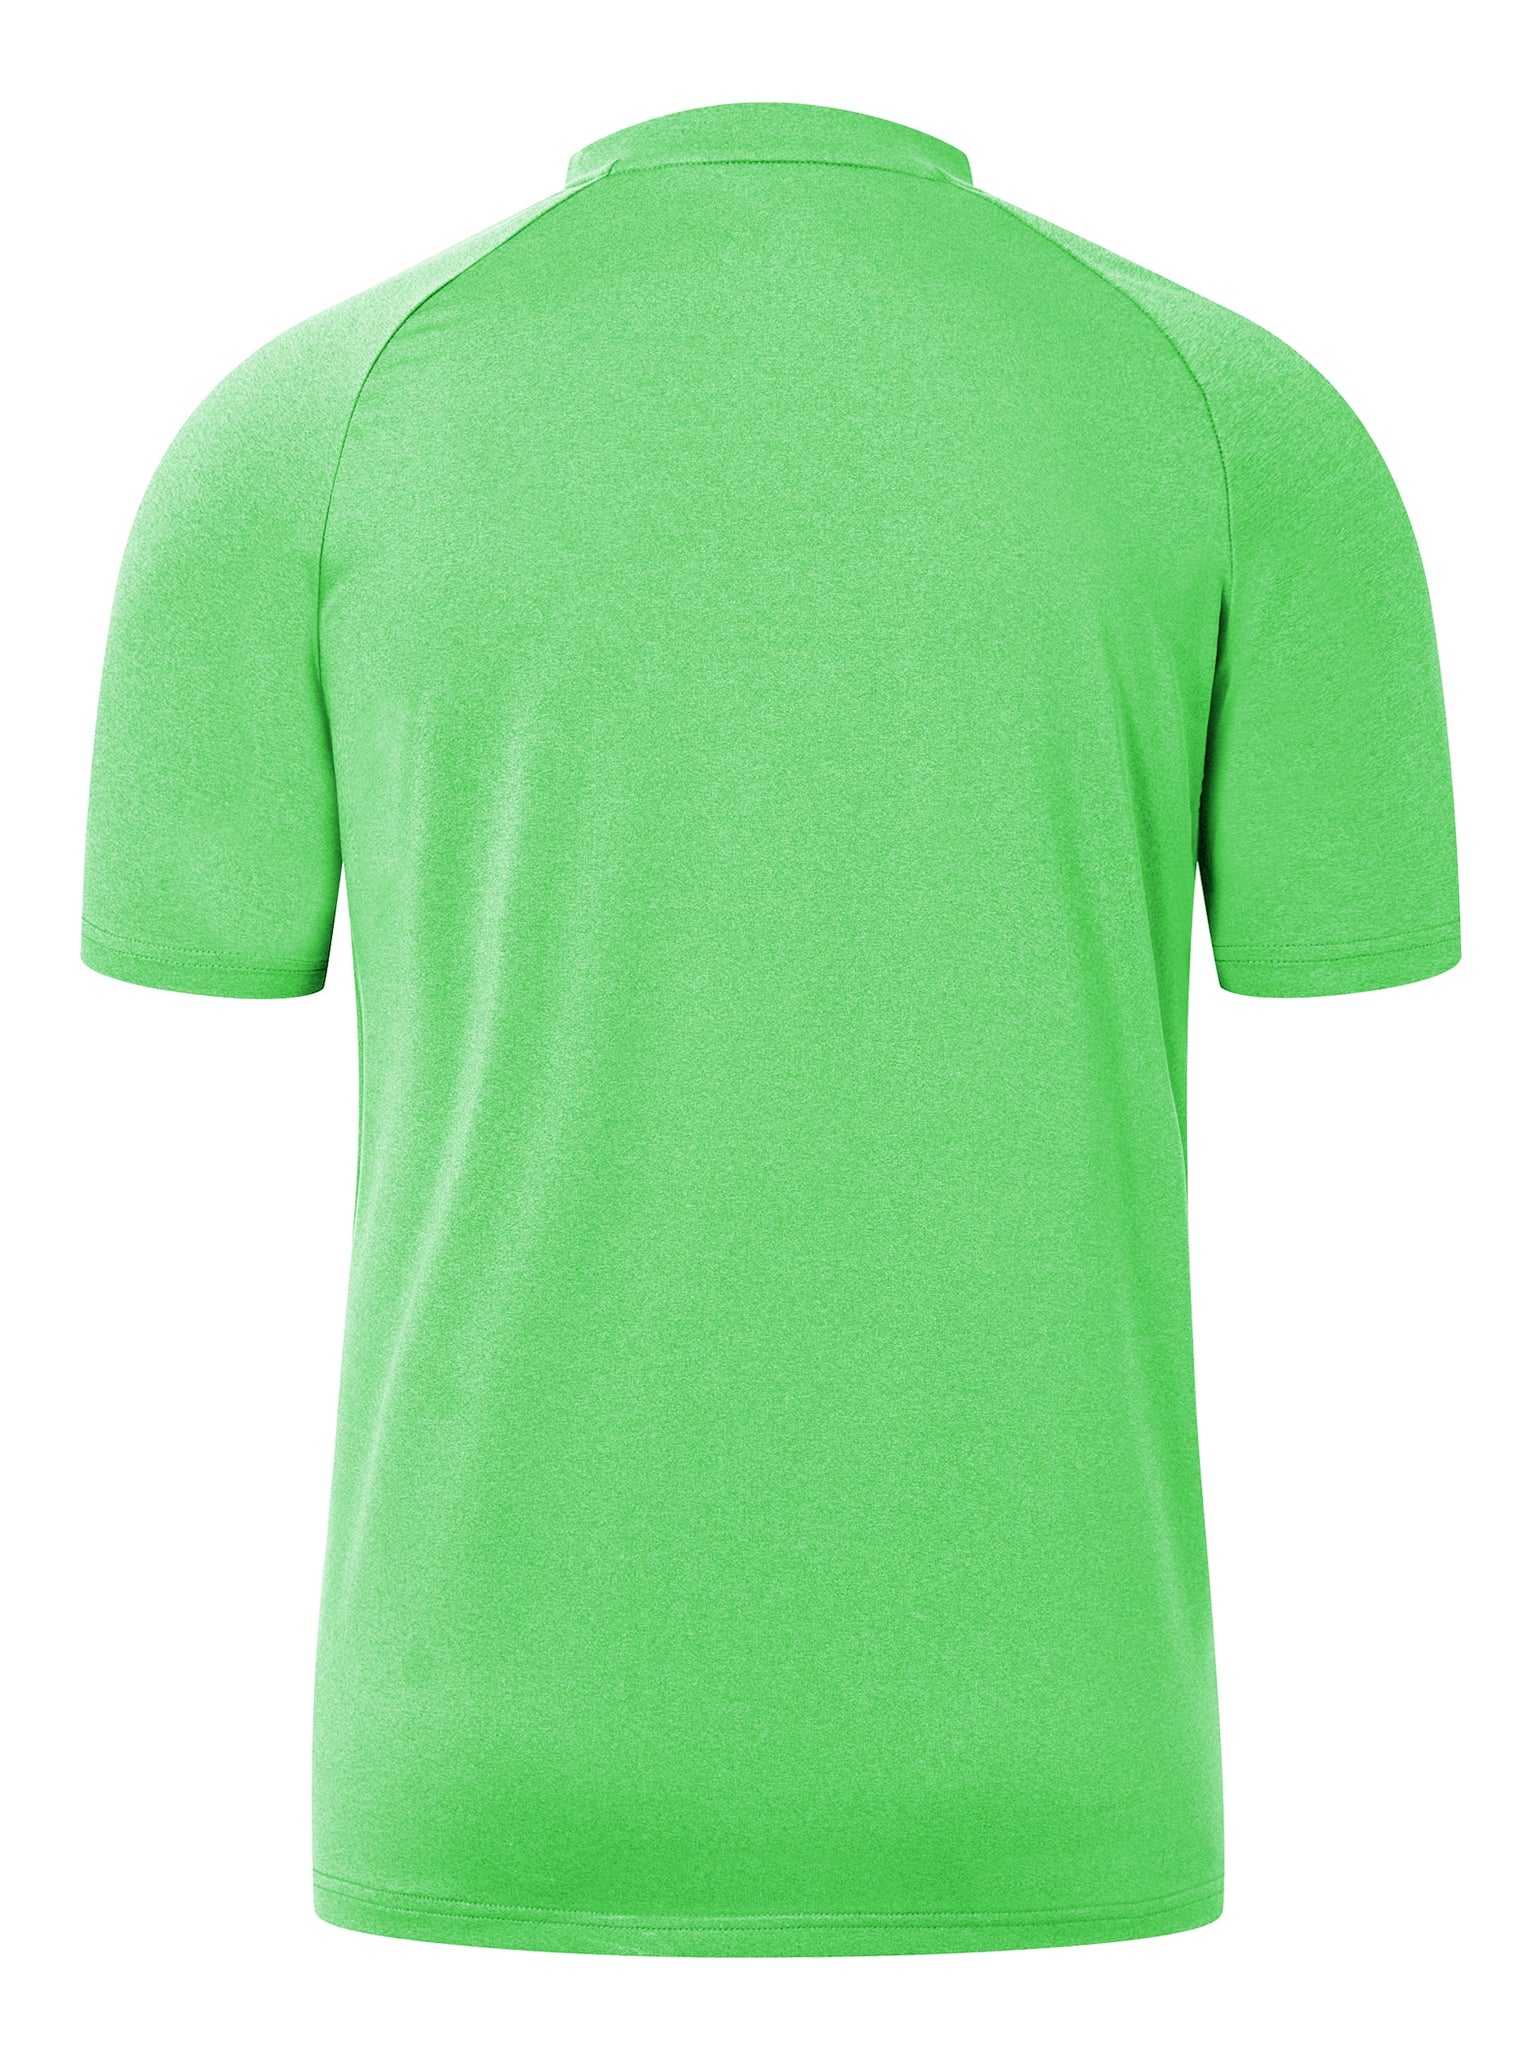 Men's Tennis Shirts Sun Protection